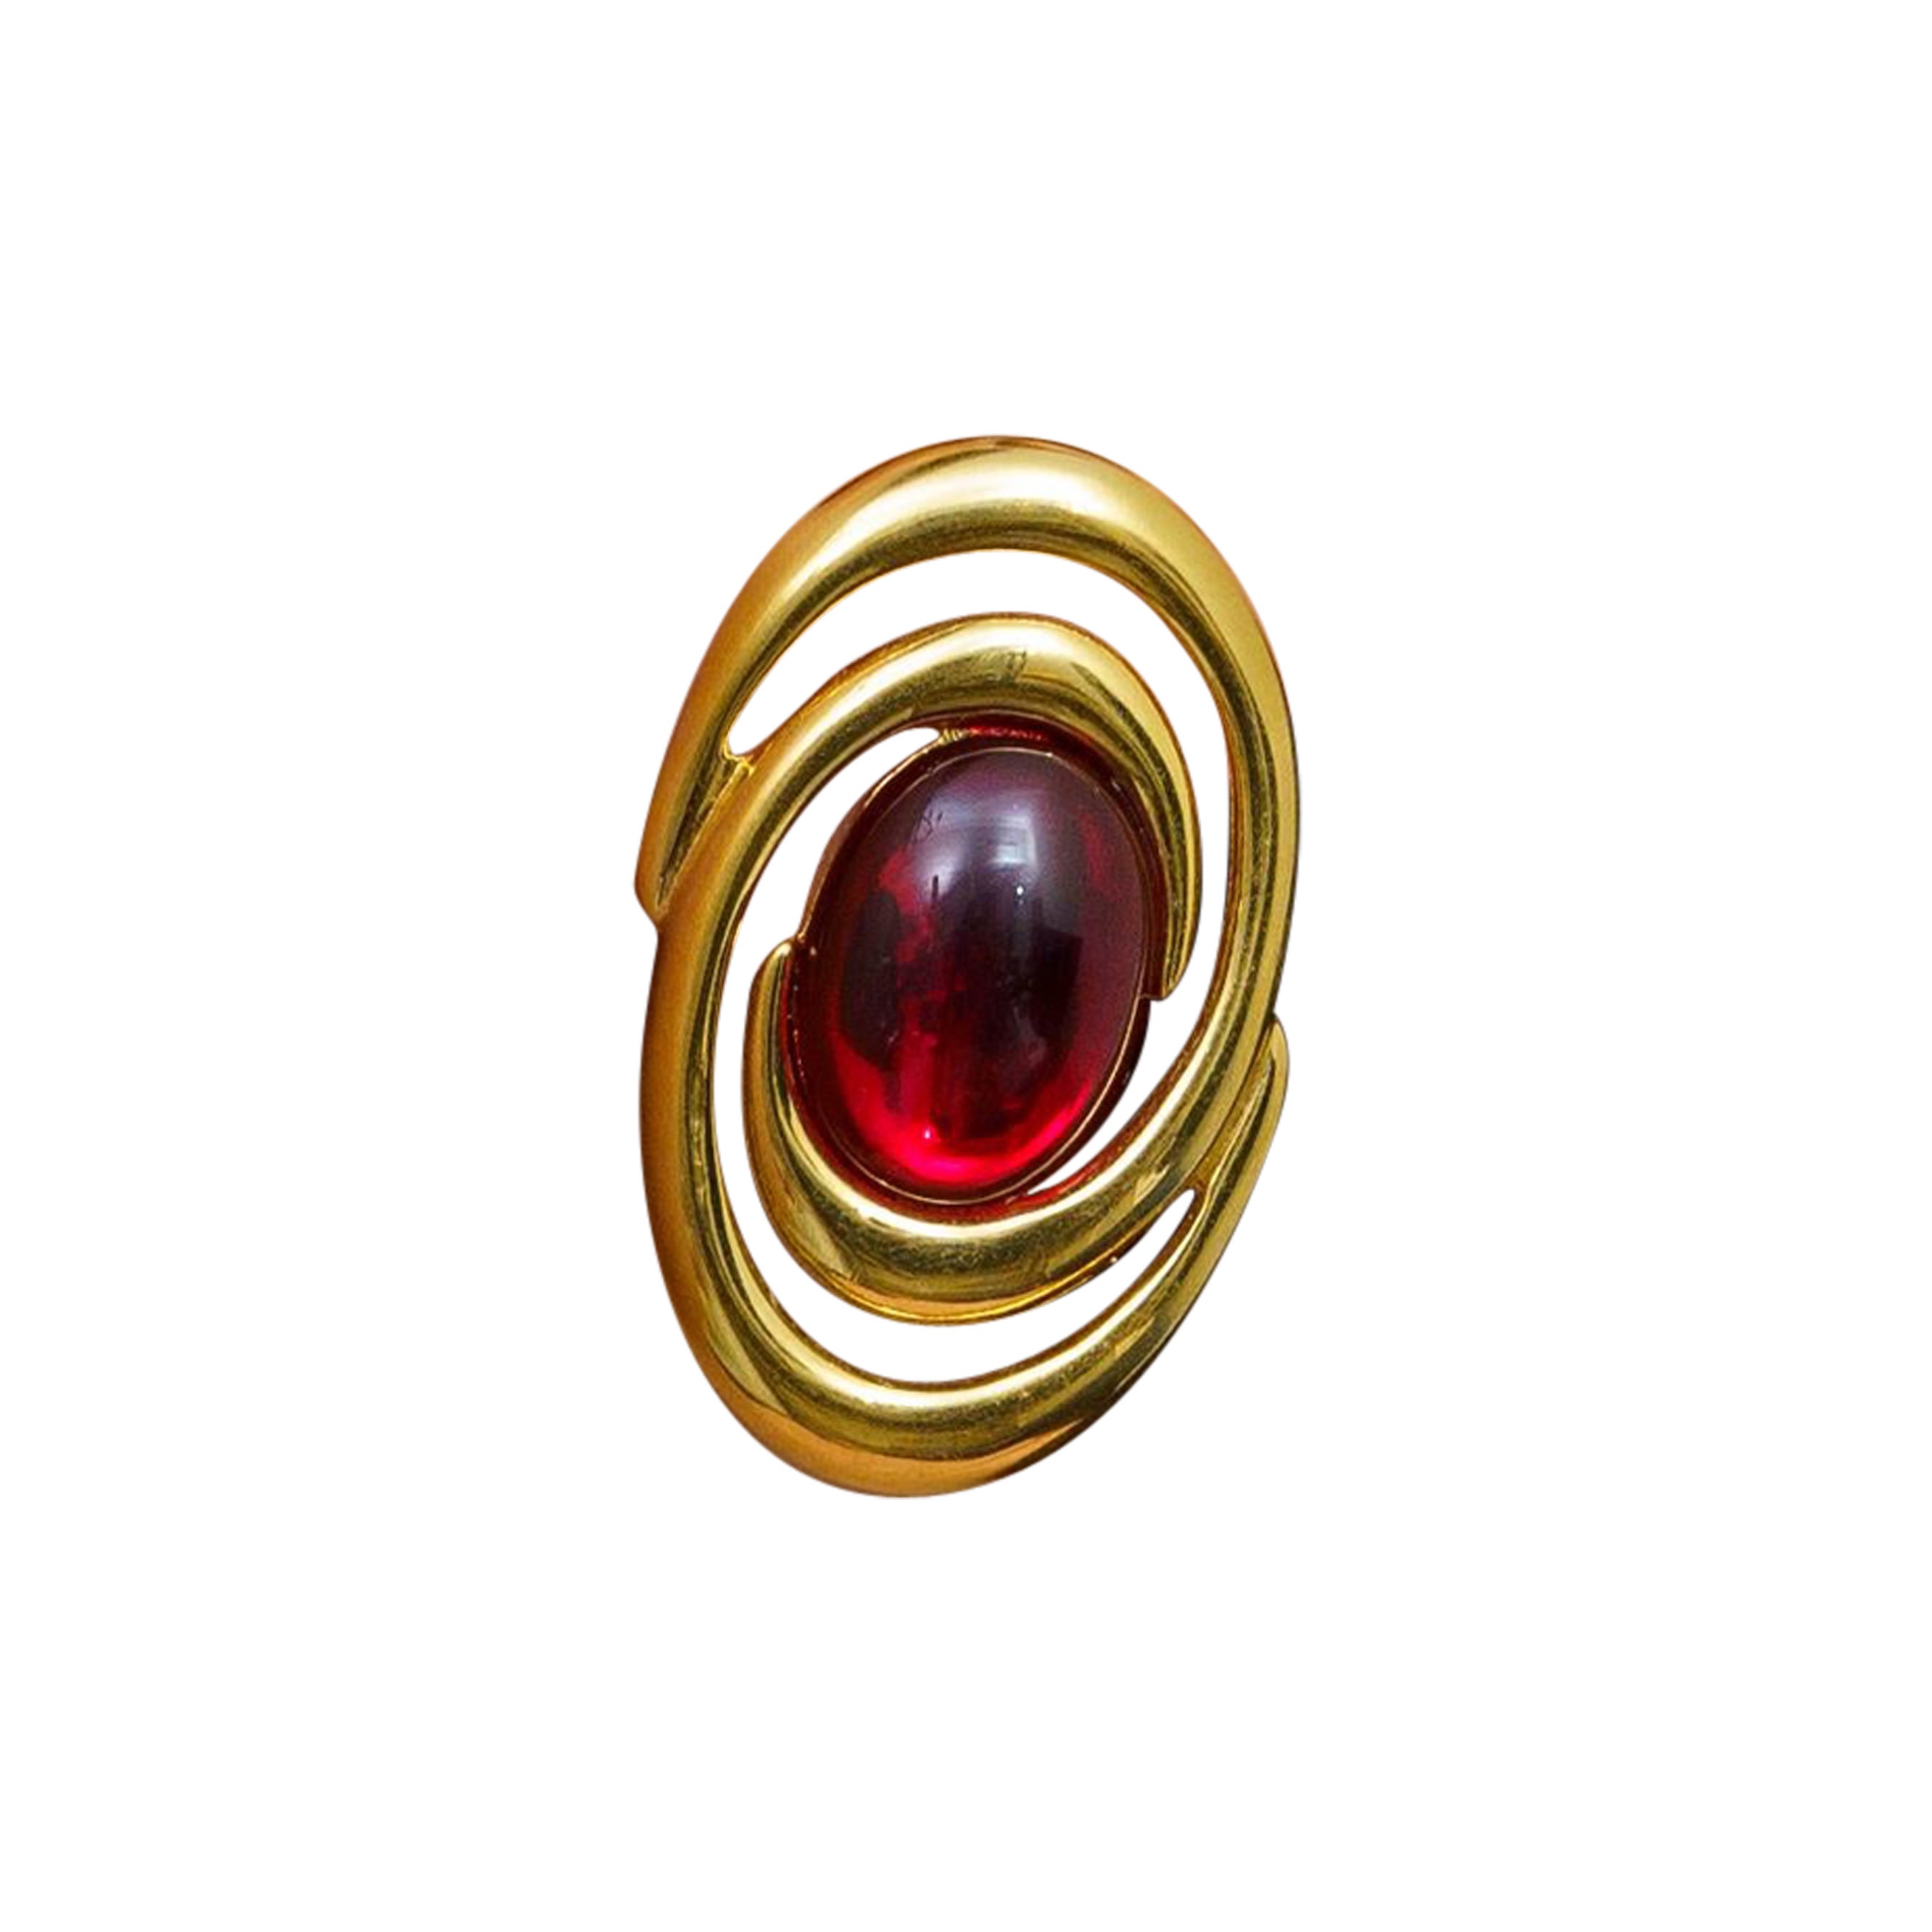 Vintage Napier Swirl Red Glass Ear Clips sind zeitlos schön und verleihen der Trägerin eine Signatur der Qualität. Diese luxuriösen Schmuckstücke verleihen jedem Ensemble einen Hauch von Raffinesse und Eleganz und heben jeden Look auf eine neue